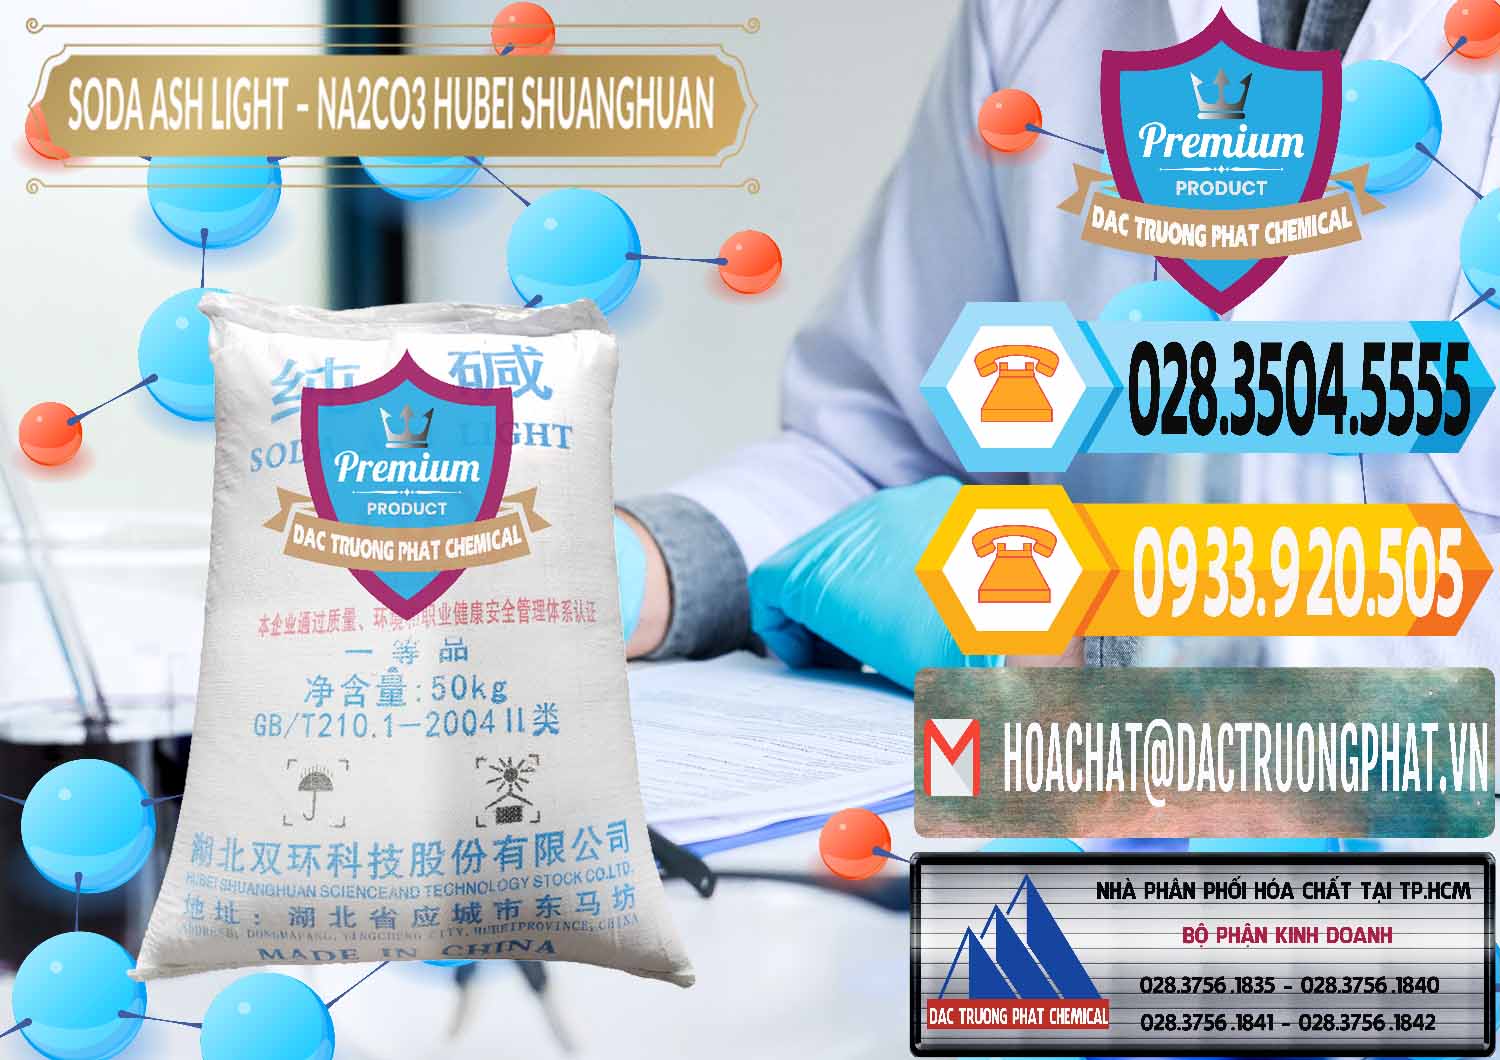 Nơi chuyên cung cấp ( bán ) Soda Ash Light - NA2CO3 2 Vòng Tròn Hubei Shuanghuan Trung Quốc China - 0130 - Đơn vị phân phối _ bán hóa chất tại TP.HCM - hoachattayrua.net